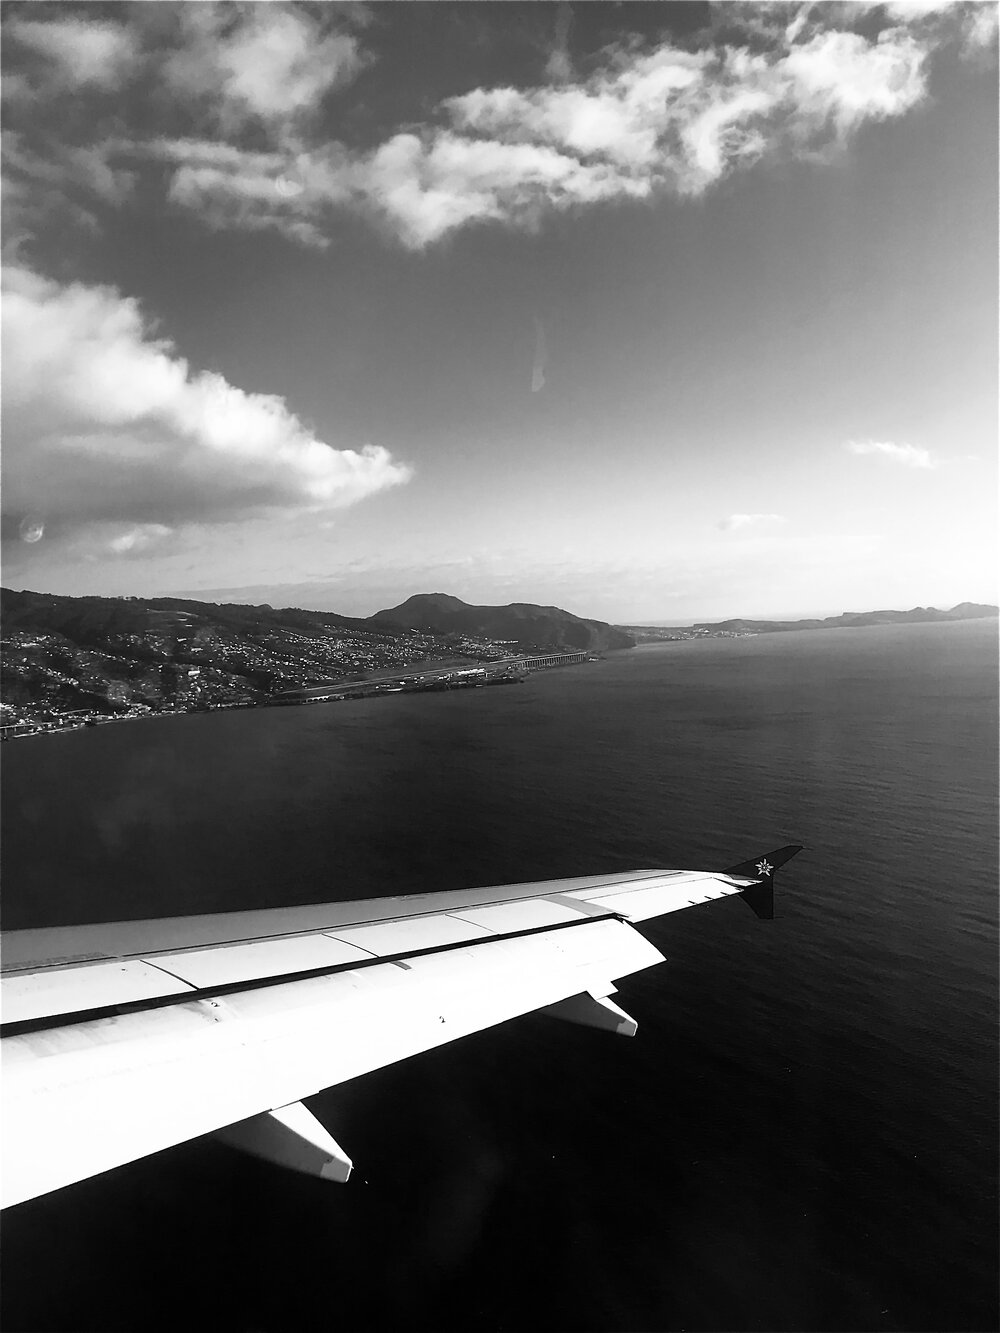  Anflug auf den Flughafen von Funchal. In Hintergrund ist die charakteristische, auf grossen Pfeilern erbaute Landebahn zu sehen. 